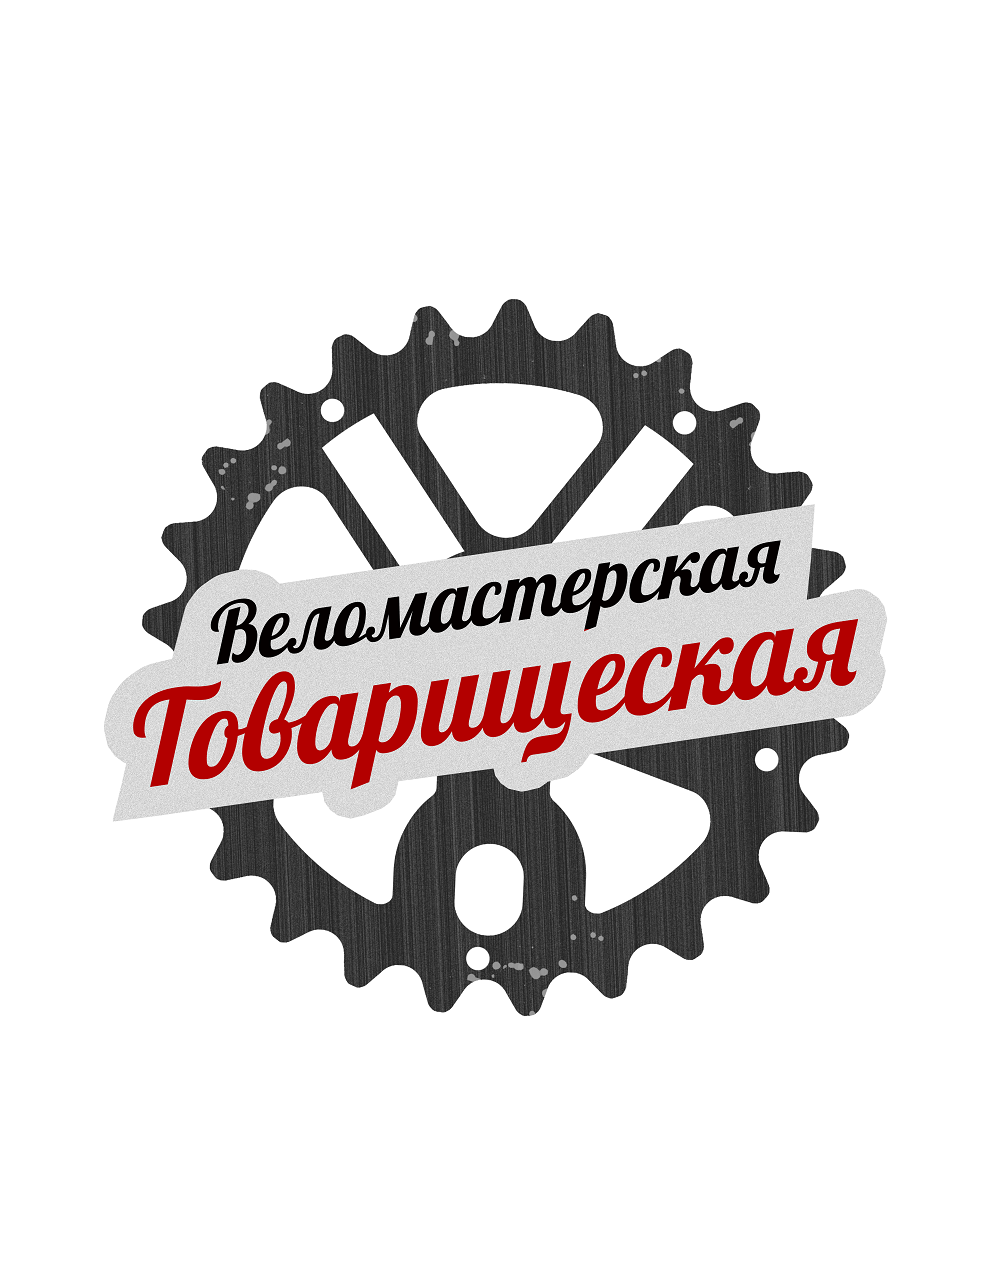 Velomasterskaya_Tovarischeskaya - копия.png